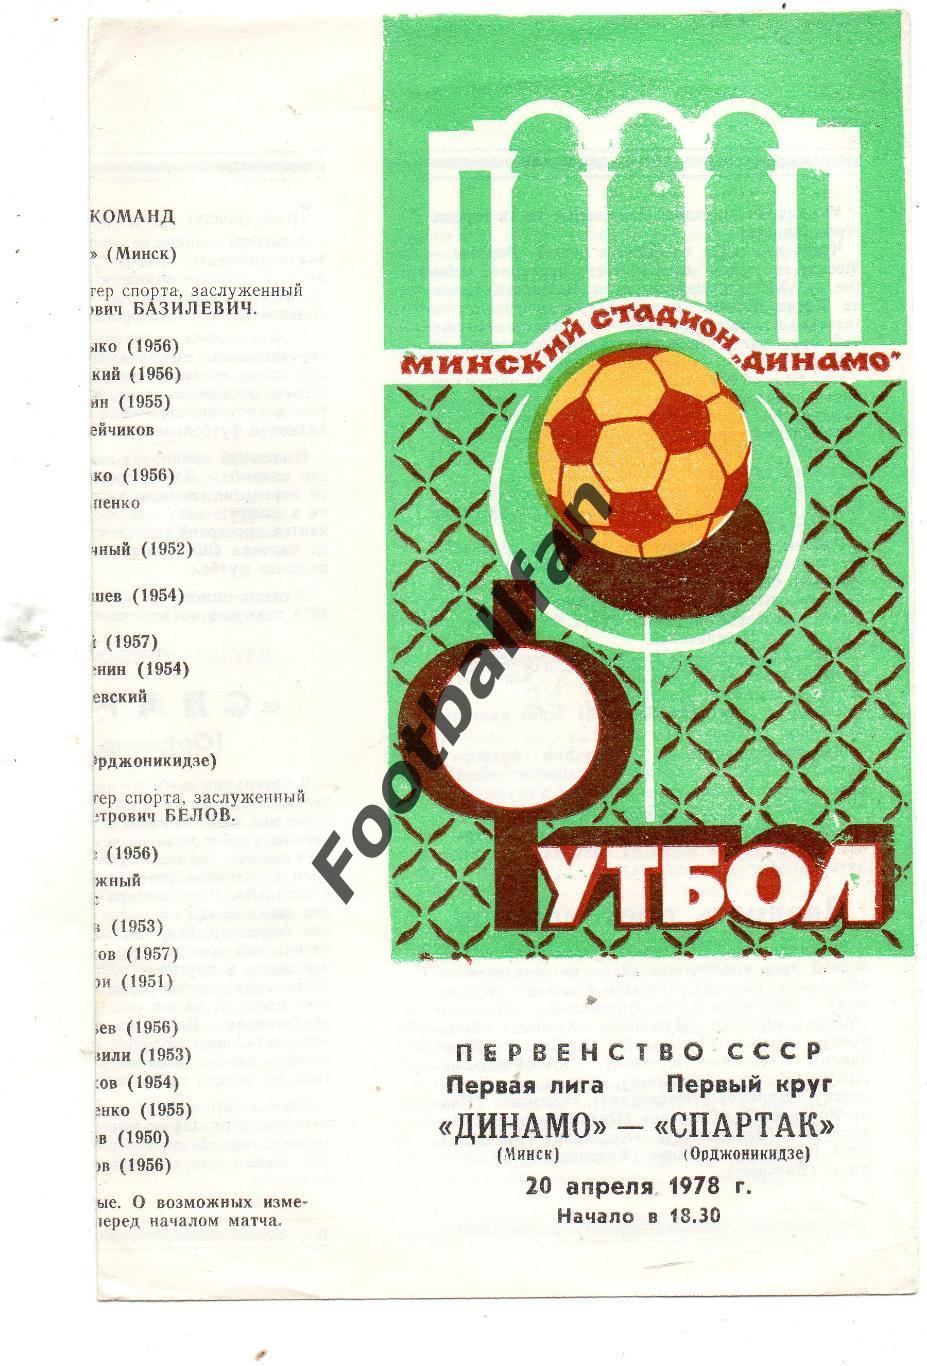 Динамо Минск - Спартак Орджоникидзе 20.04.1978